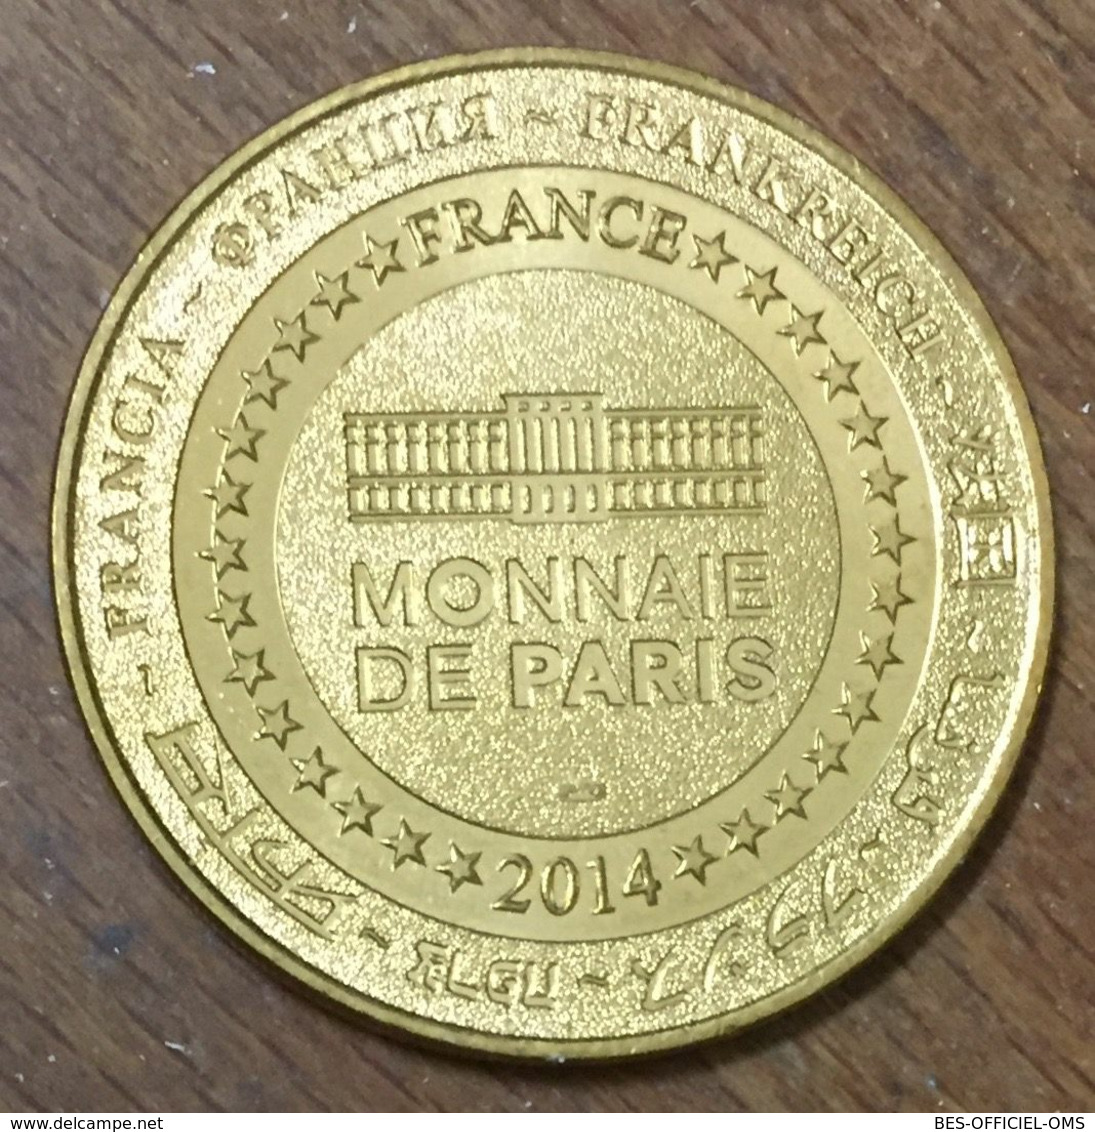 89 GUÉDELON CHANTIER MÉDIÉVAL MDP 2014 MÉDAILLE SOUVENIR MONNAIE DE PARIS JETON TOURISTIQUE MEDALS COINS TOKENS - 2014